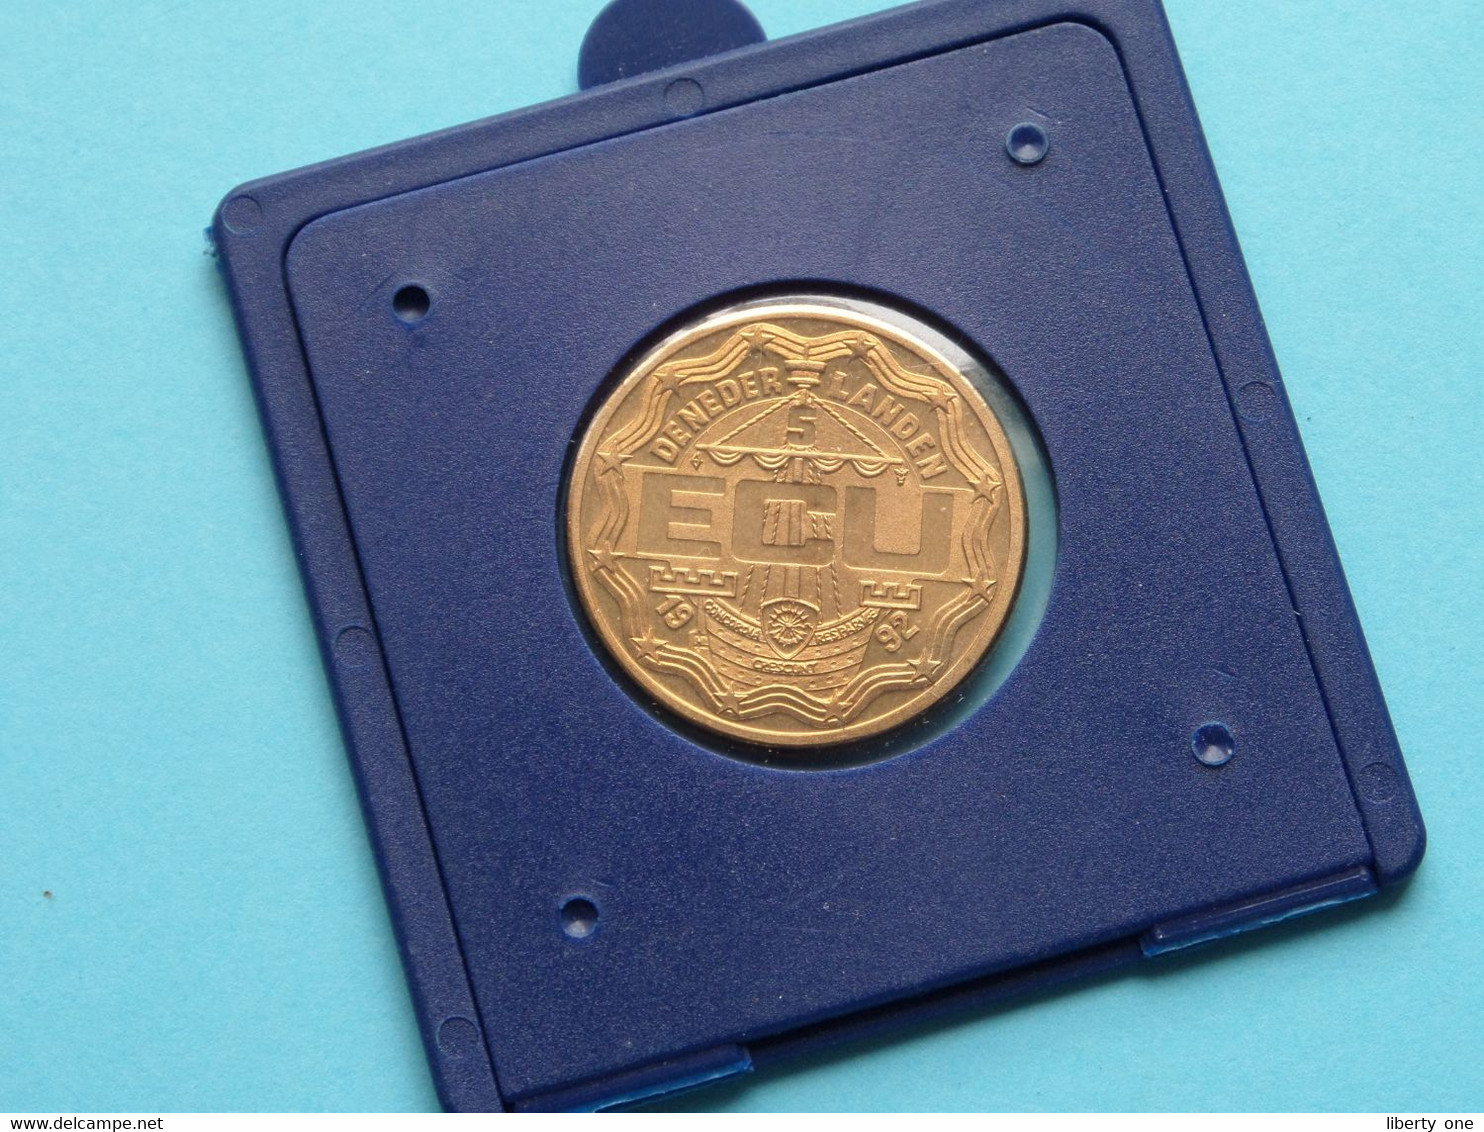 5 ECU De Nederlanden 1992 - Uitbreiding Van Het Verkeer Met Alle Volken ( For Grade, Please See Photo ) ! - Trade Coins